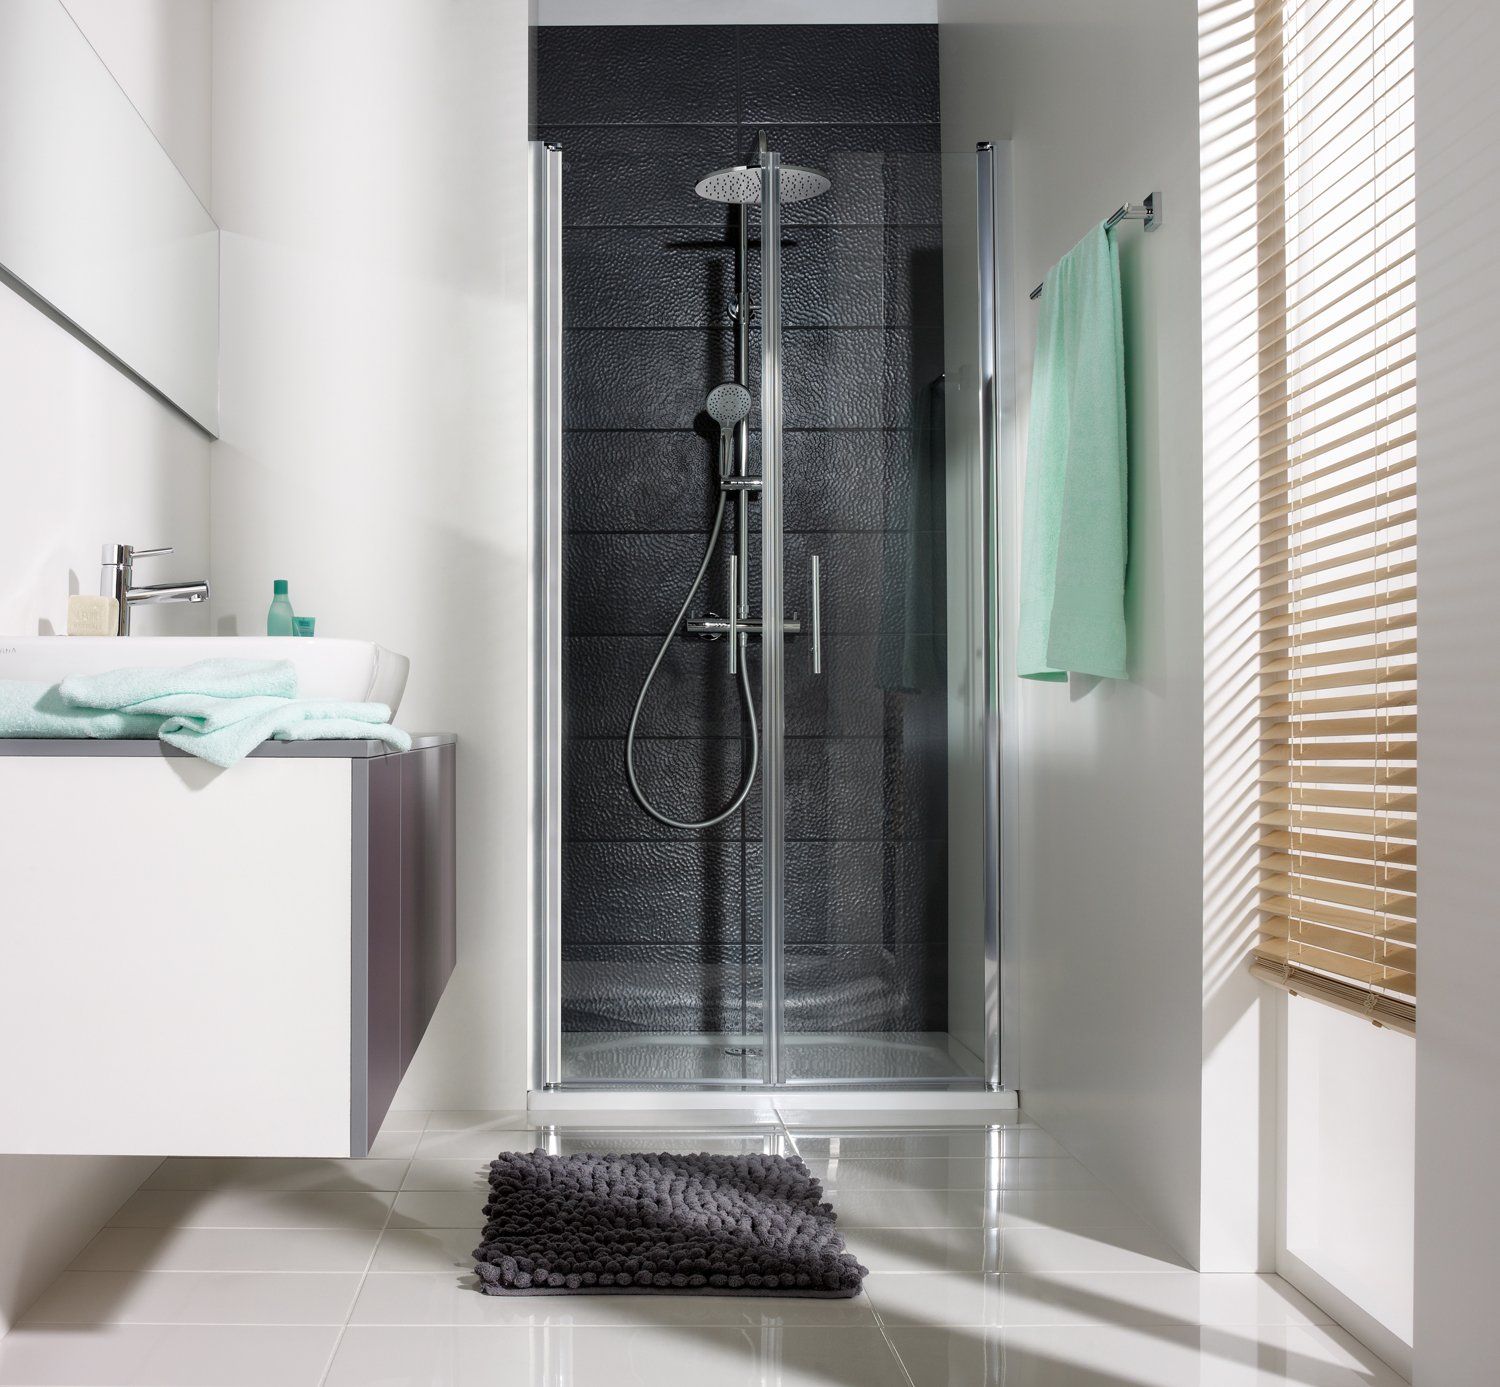 Dusche in Nischemit schwarzen Wandfliesen in kleinem Bad mit großem Fenster